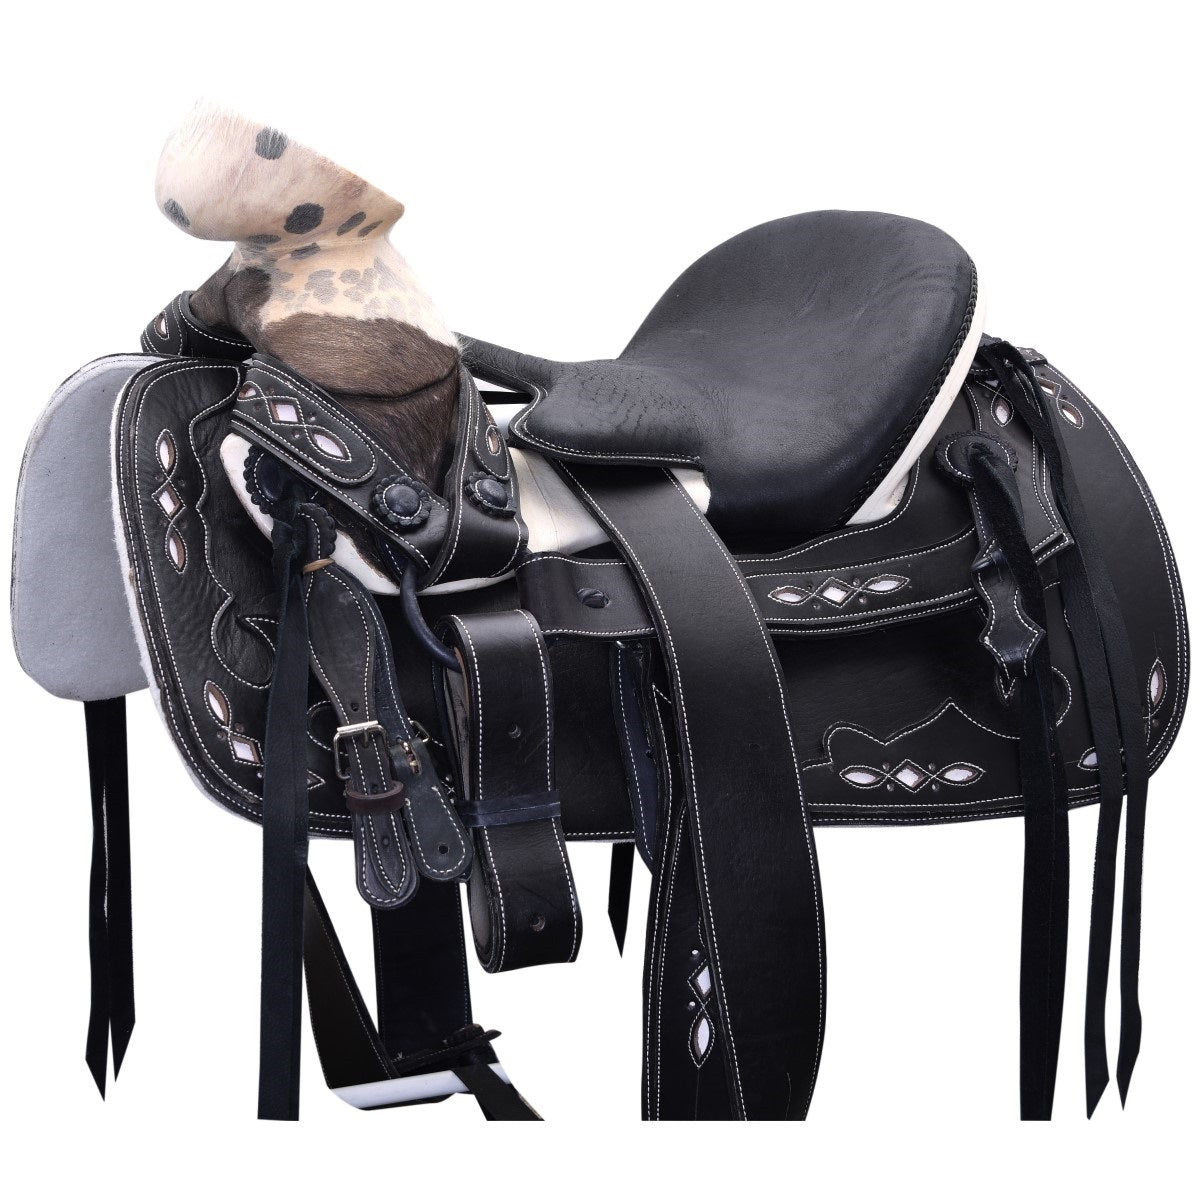 Silla de Montar para Caballo TM-WD1067-1035 Black - Horse Saddle